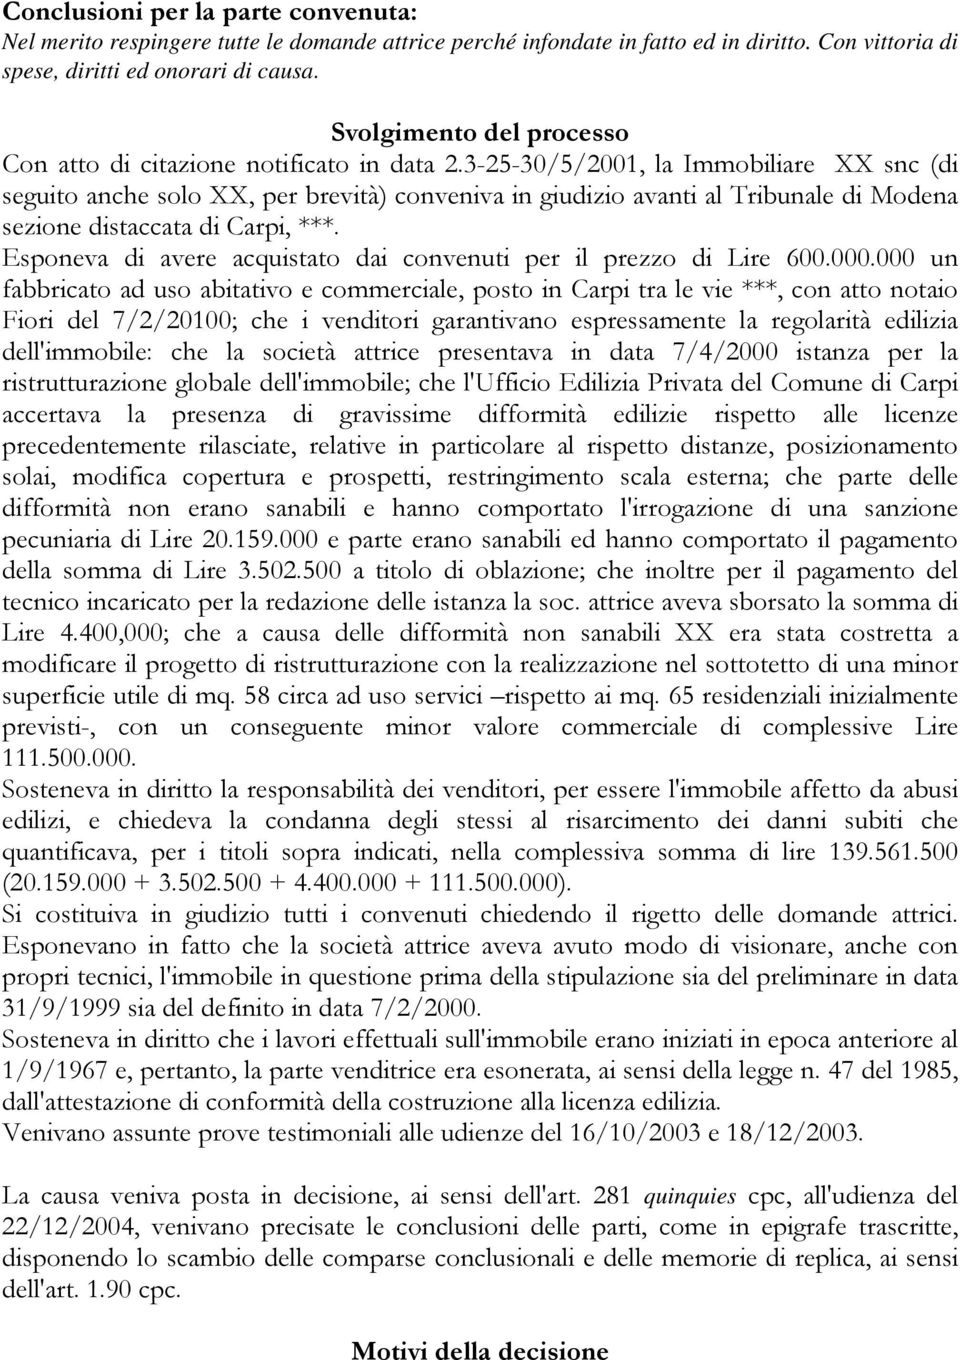 3-25-30/5/2001, la Immobiliare XX snc (di seguito anche solo XX, per brevità) conveniva in giudizio avanti al Tribunale di Modena sezione distaccata di Carpi, ***.